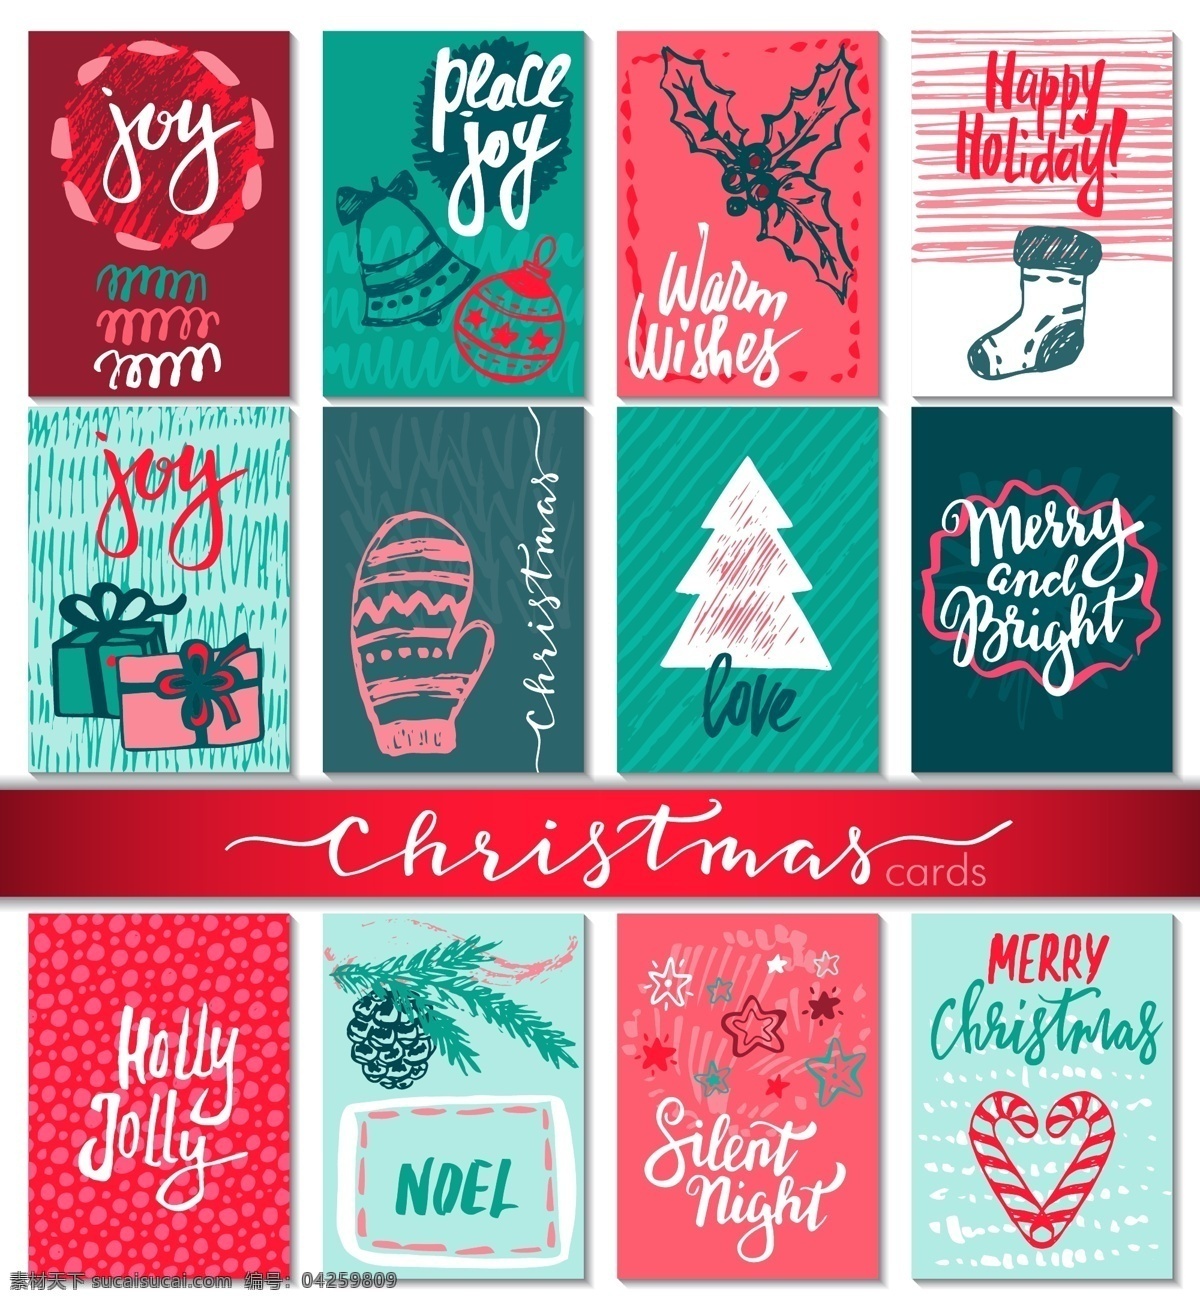 小 清新 冬季 假期 节日 气氛 背景 图 矢量 红色 创意 卡通 复古 树林 树木 填充 平面设计 广告背景 包装礼盒 圣诞节